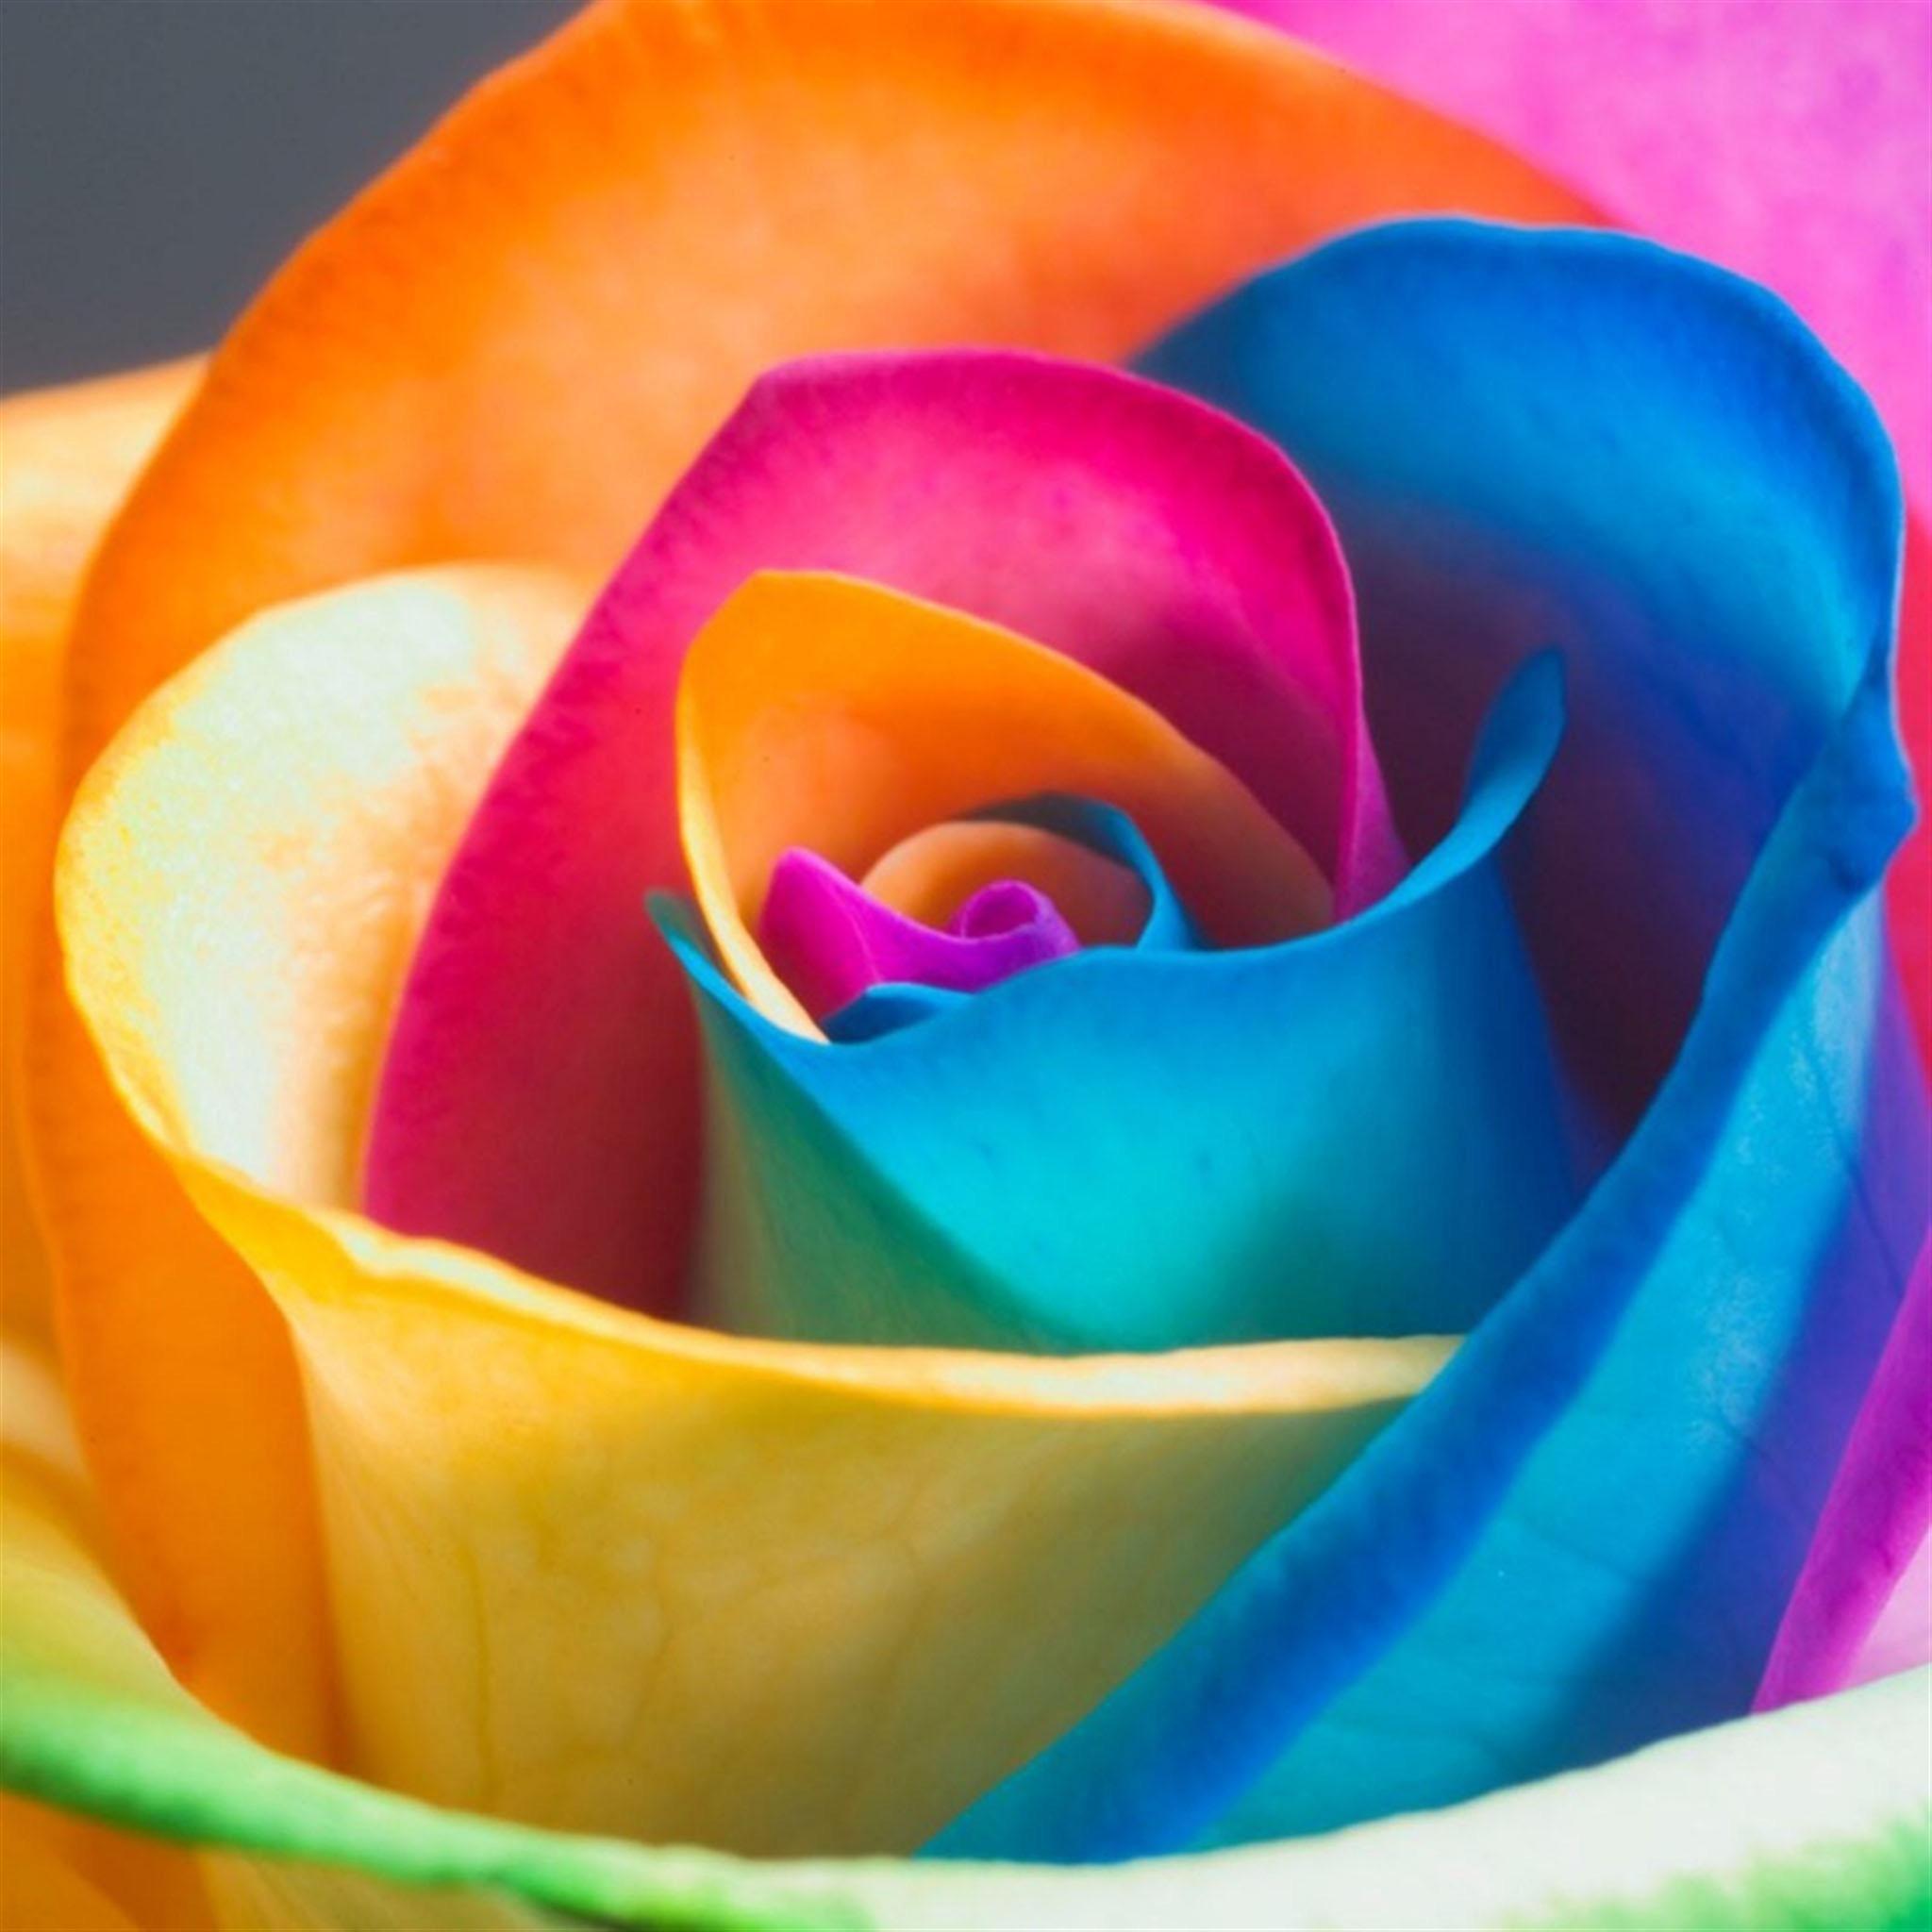 Colorful Rose Flower Macro iPad Air Wallpaper Free Download